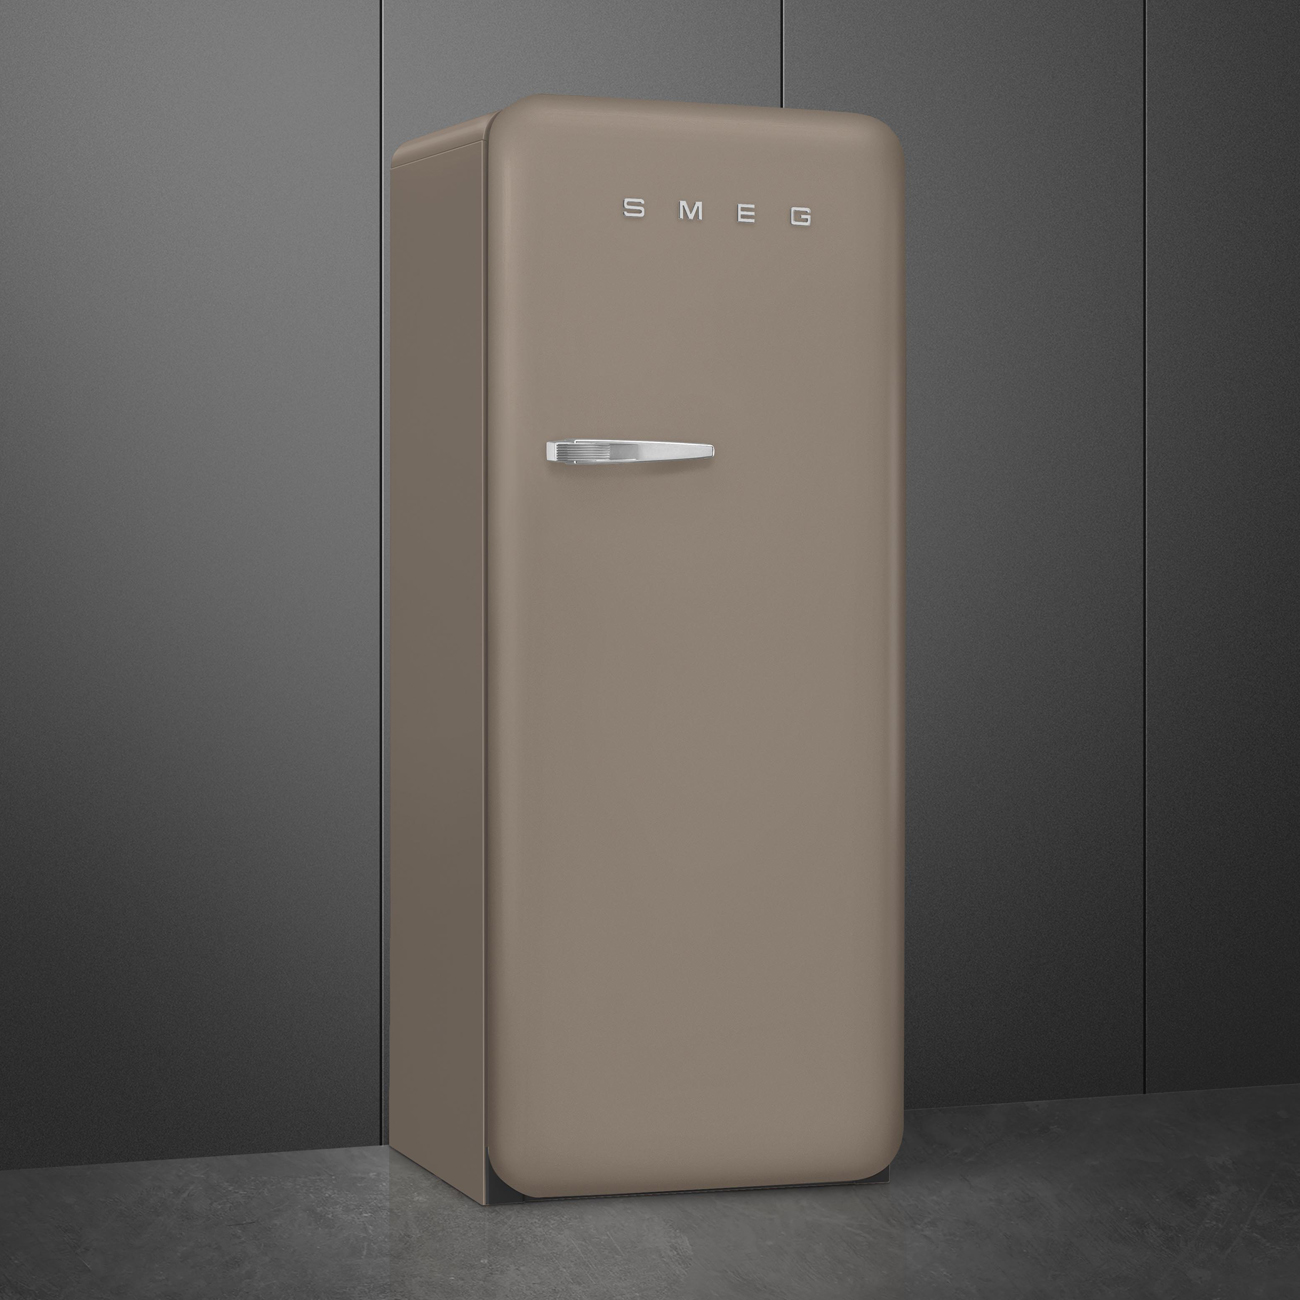 Taupe refrigerator - Smeg_2